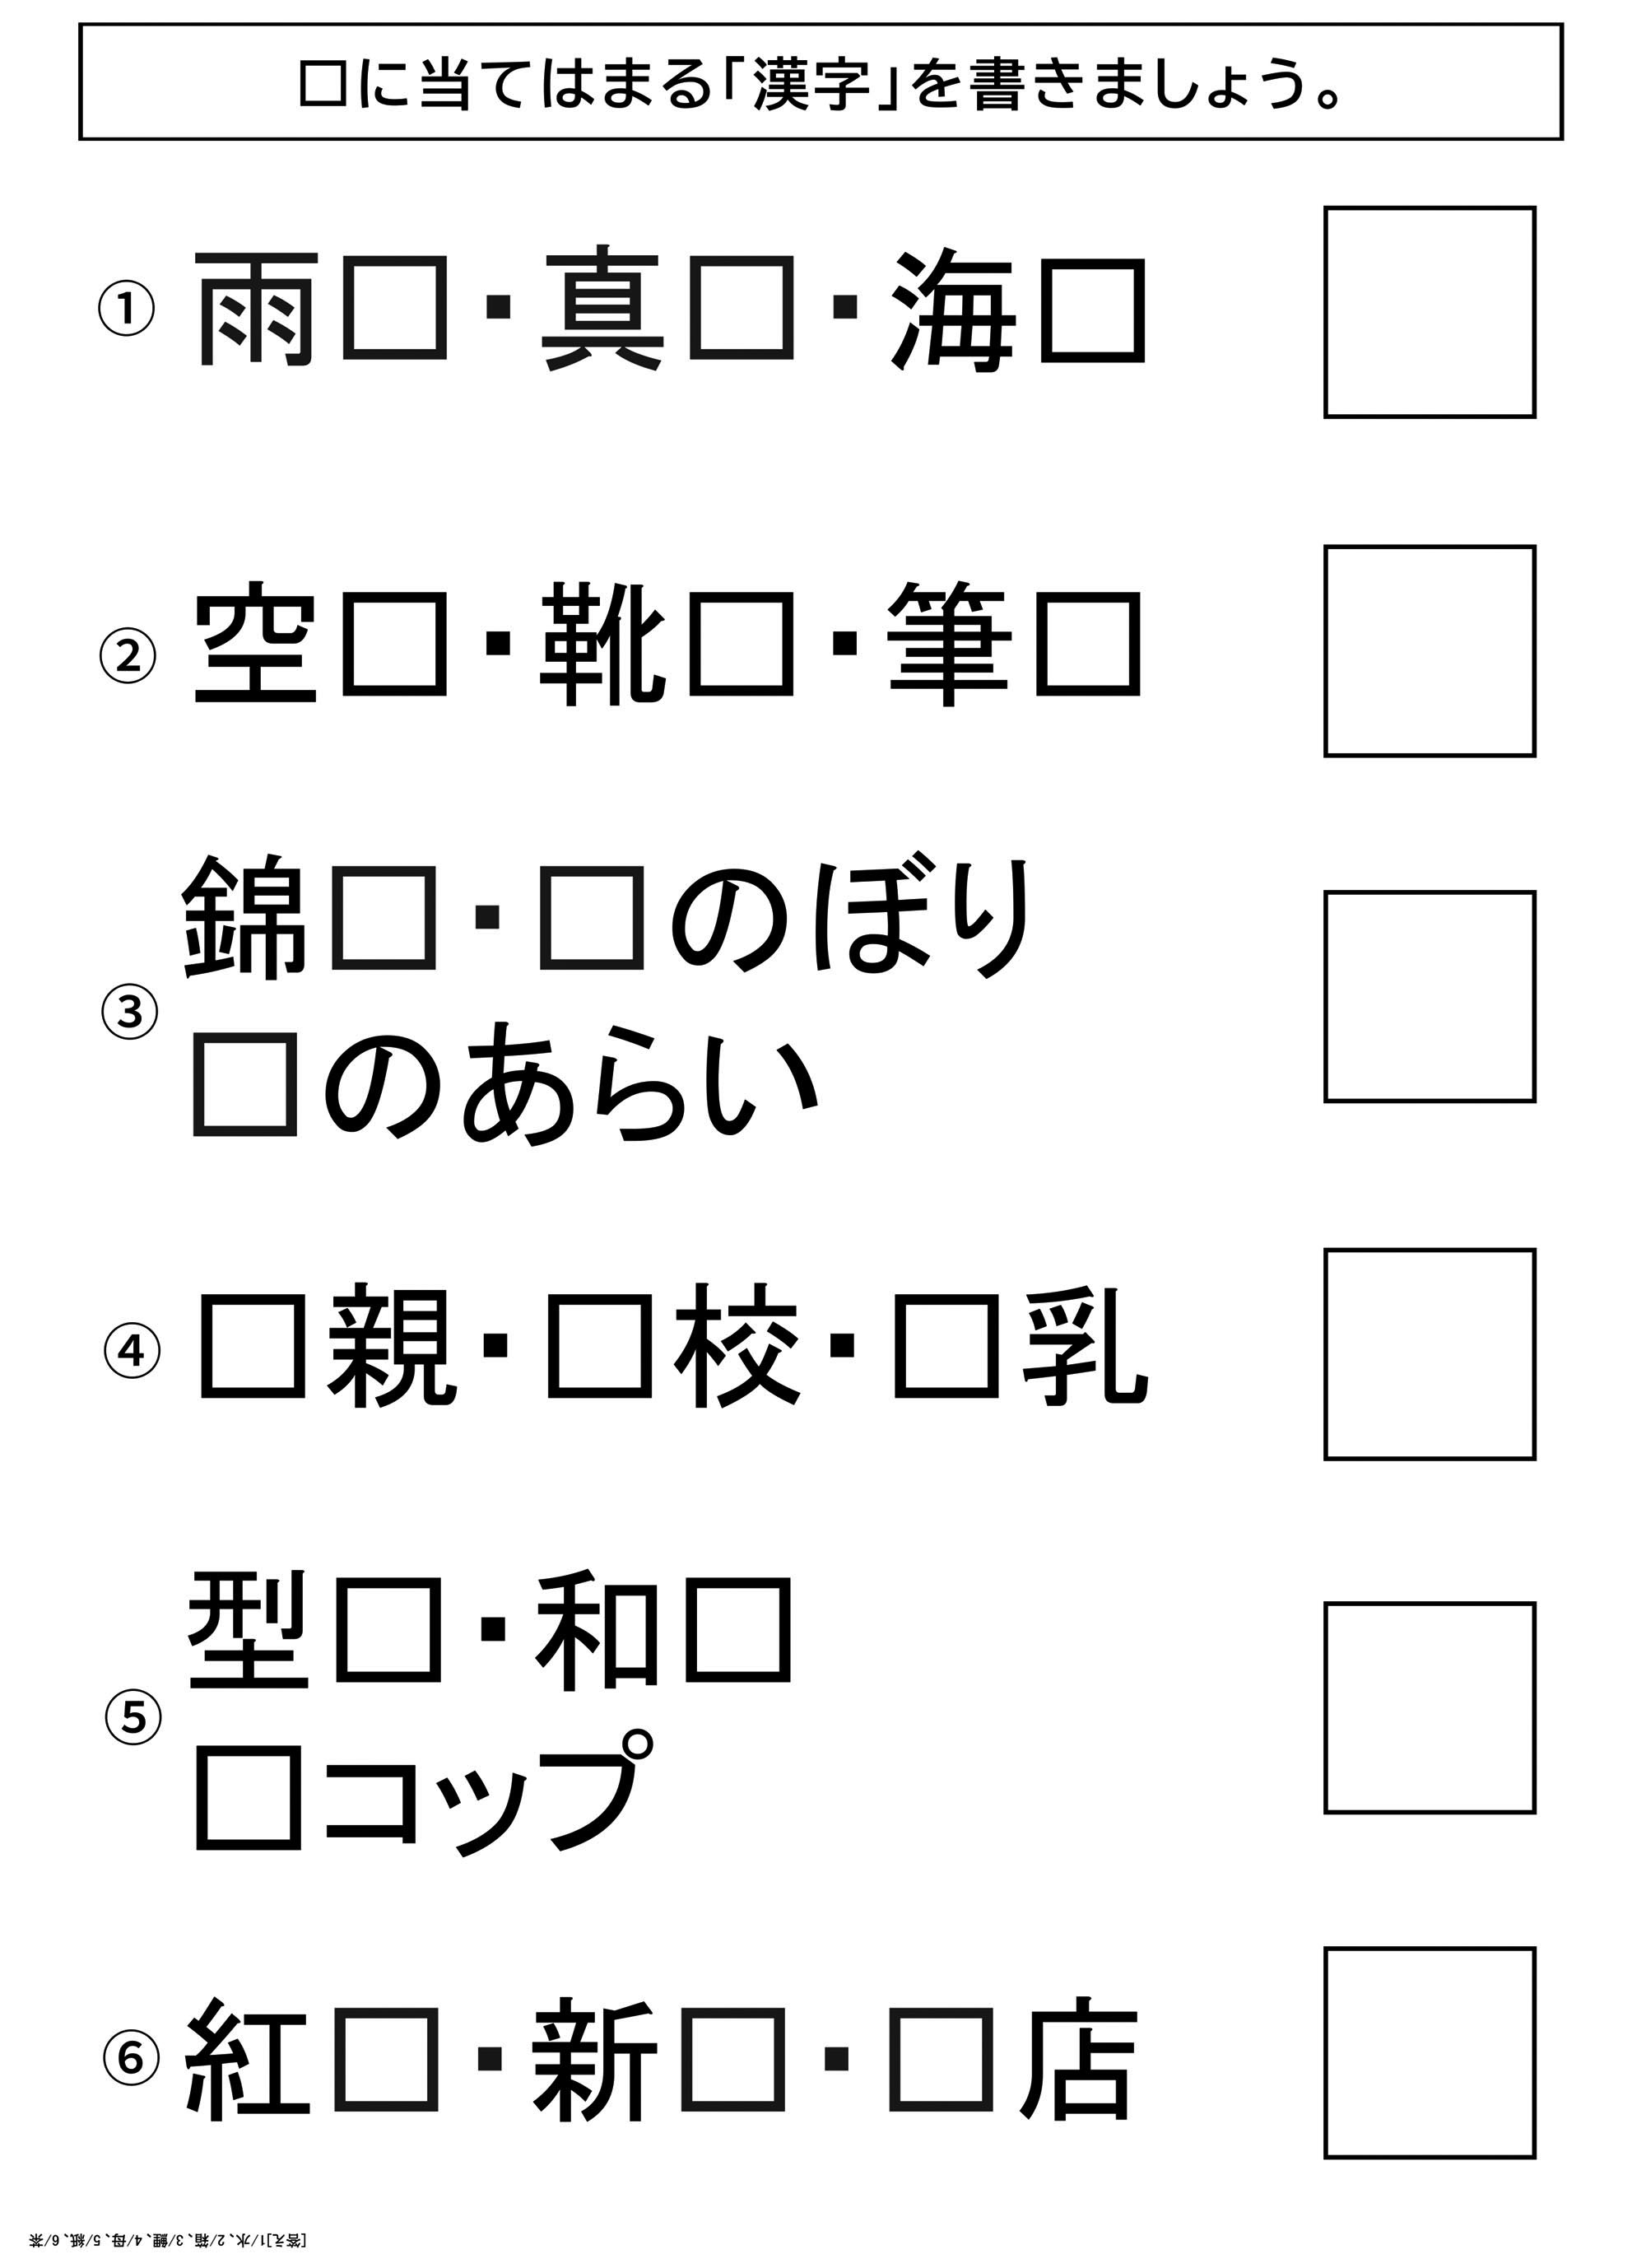 高齢者レク素材 漢字で穴埋めクイズ クイズ 介護レク広場 レク素材やレクネタ 企画書 の無料ダウンロード